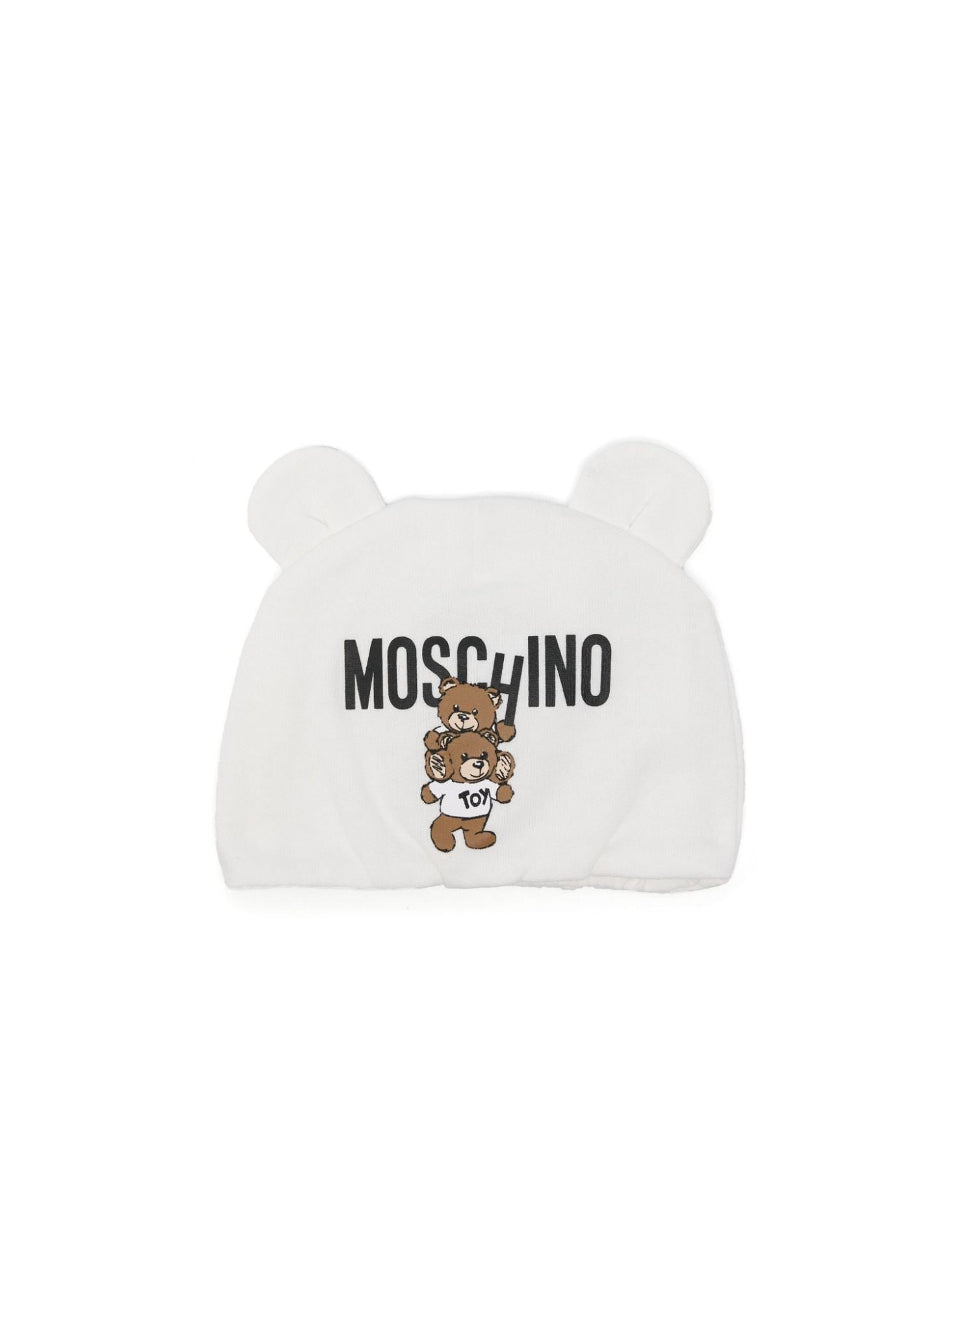 Moschino Kids Cappellino Panna con Stampa Logo Teddy Bear per Neonati 